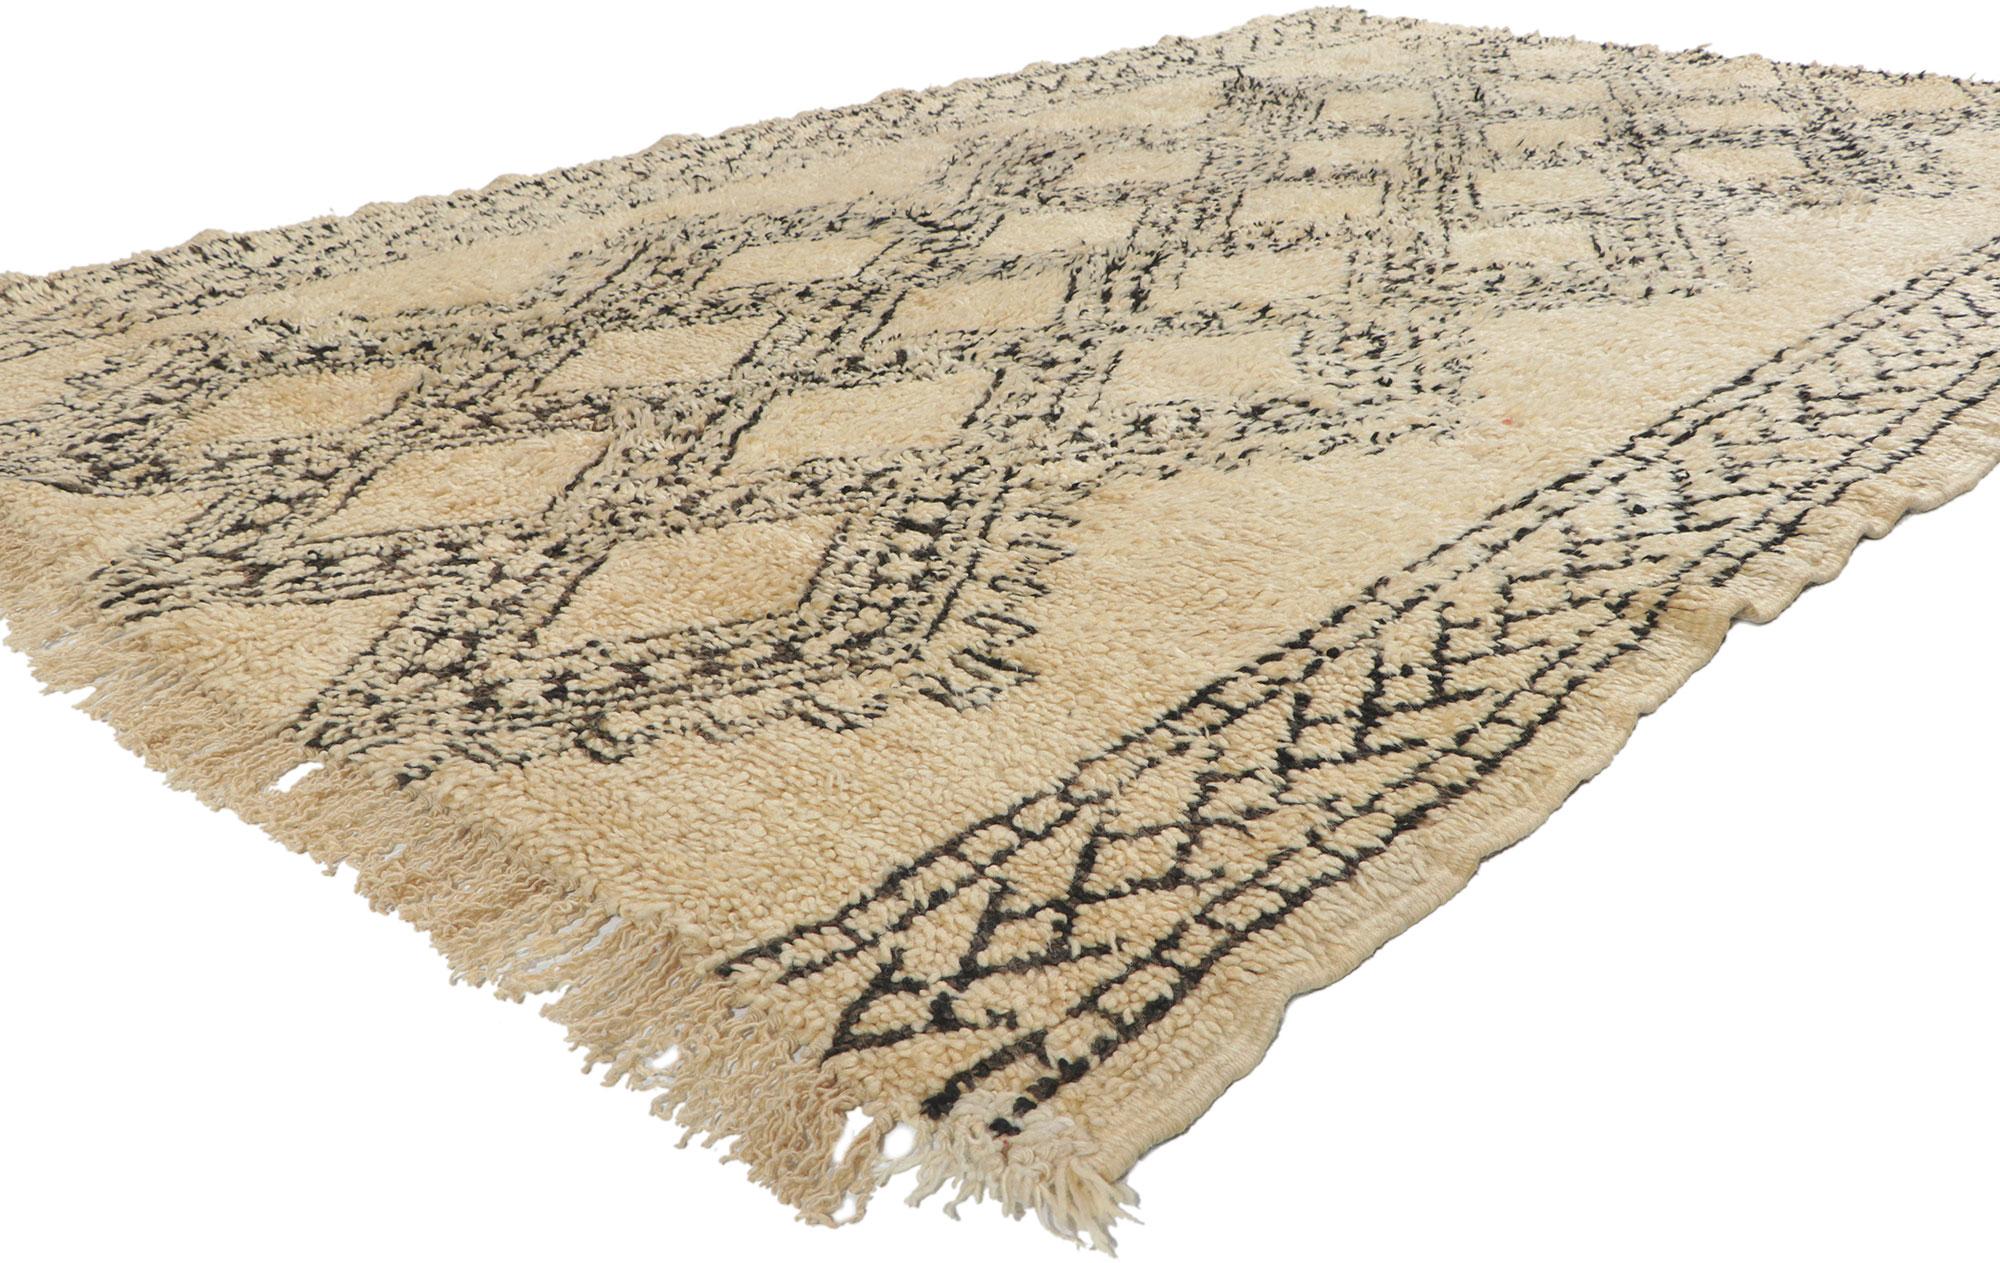 78382 Marokkanischer Vintage-Teppich Beni Ourain, 06'00 x 09'07. Dieser handgeknüpfte marokkanische Wollteppich aus dem Hause Beni Ourain besticht durch seine Schlichtheit, seinen plüschigen Flor und seine unglaubliche Detailtreue und Textur. Das